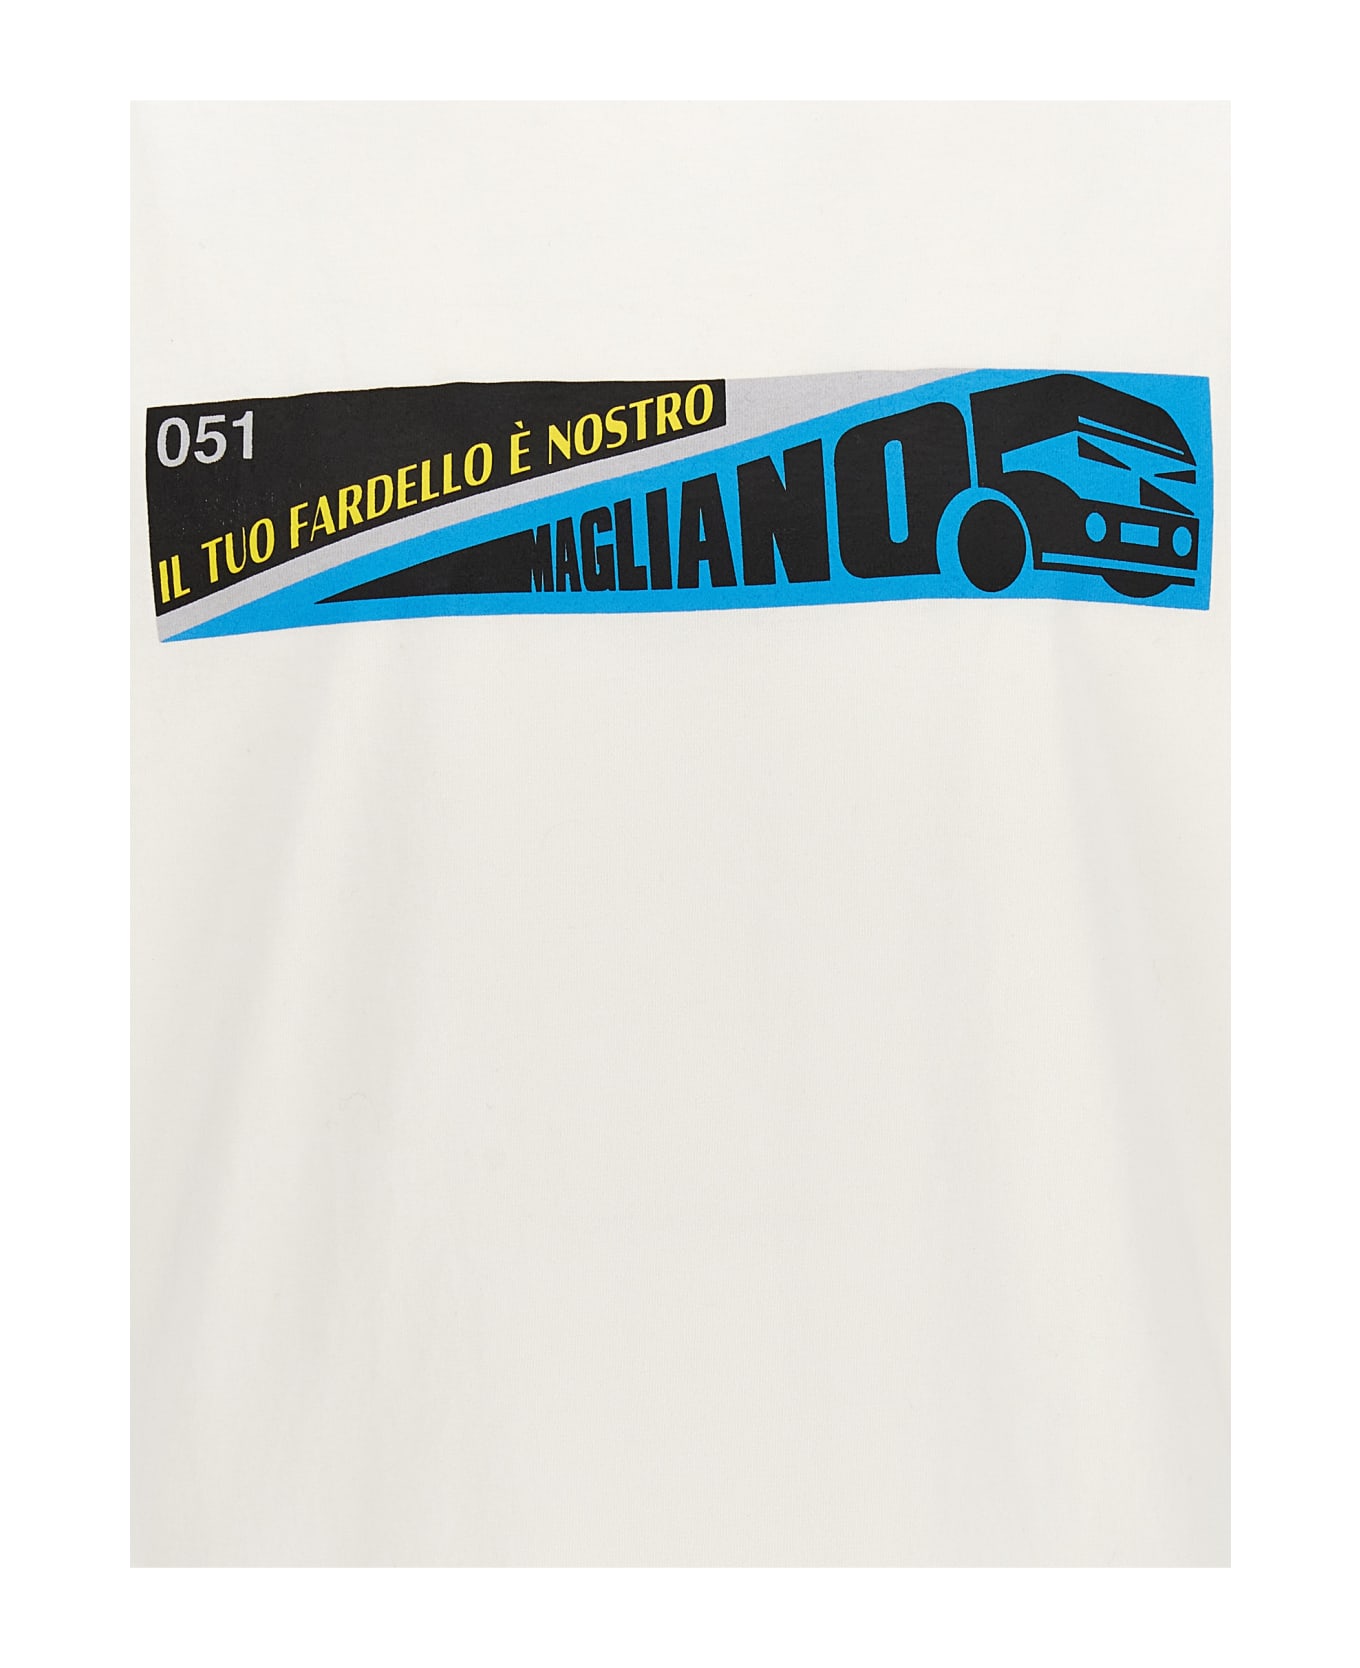 Magliano 'fardello' T-shirt - White シャツ